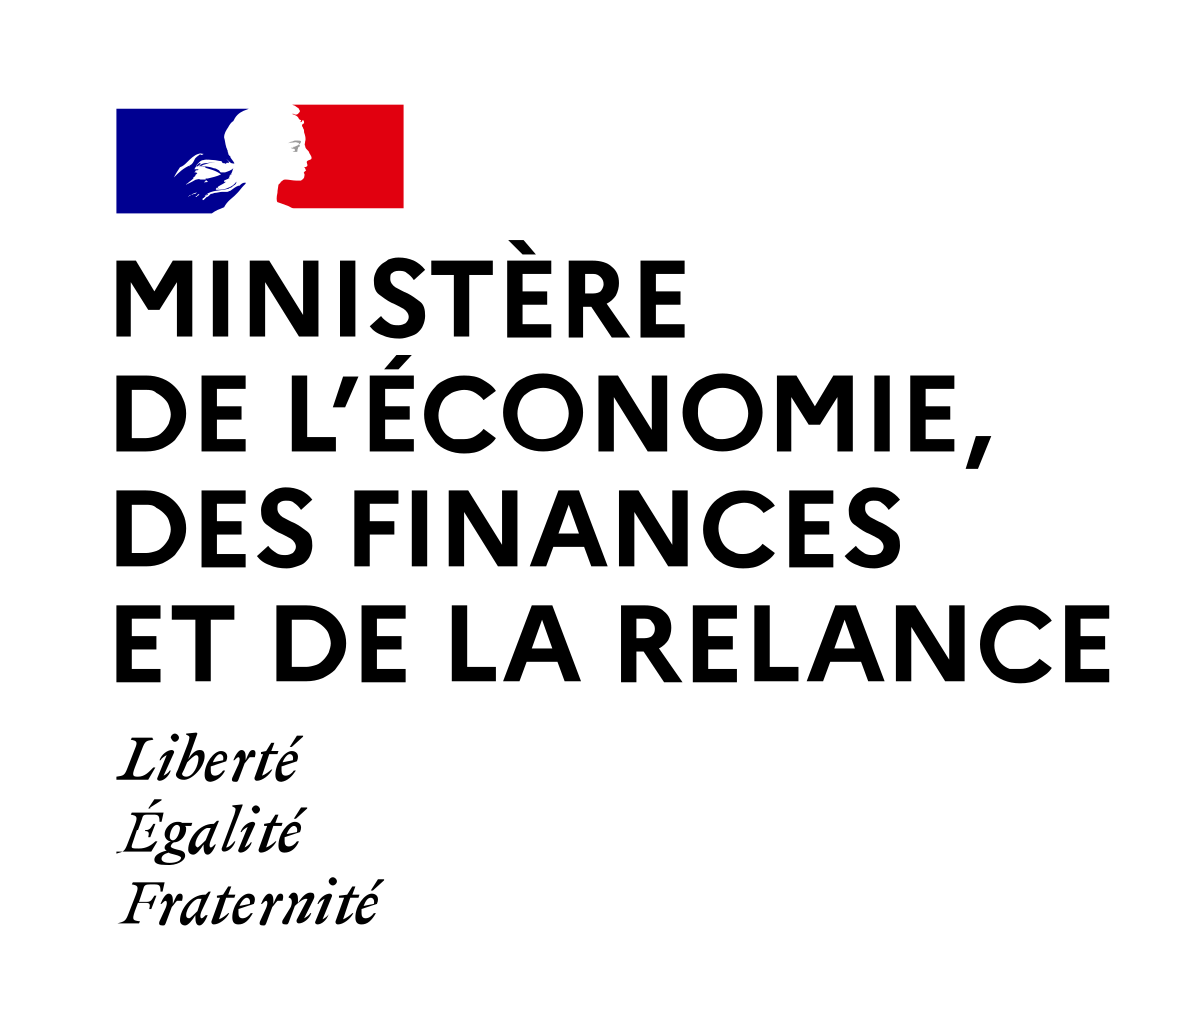 Ministere de l'Economie, des Finances et de la Relance Logo